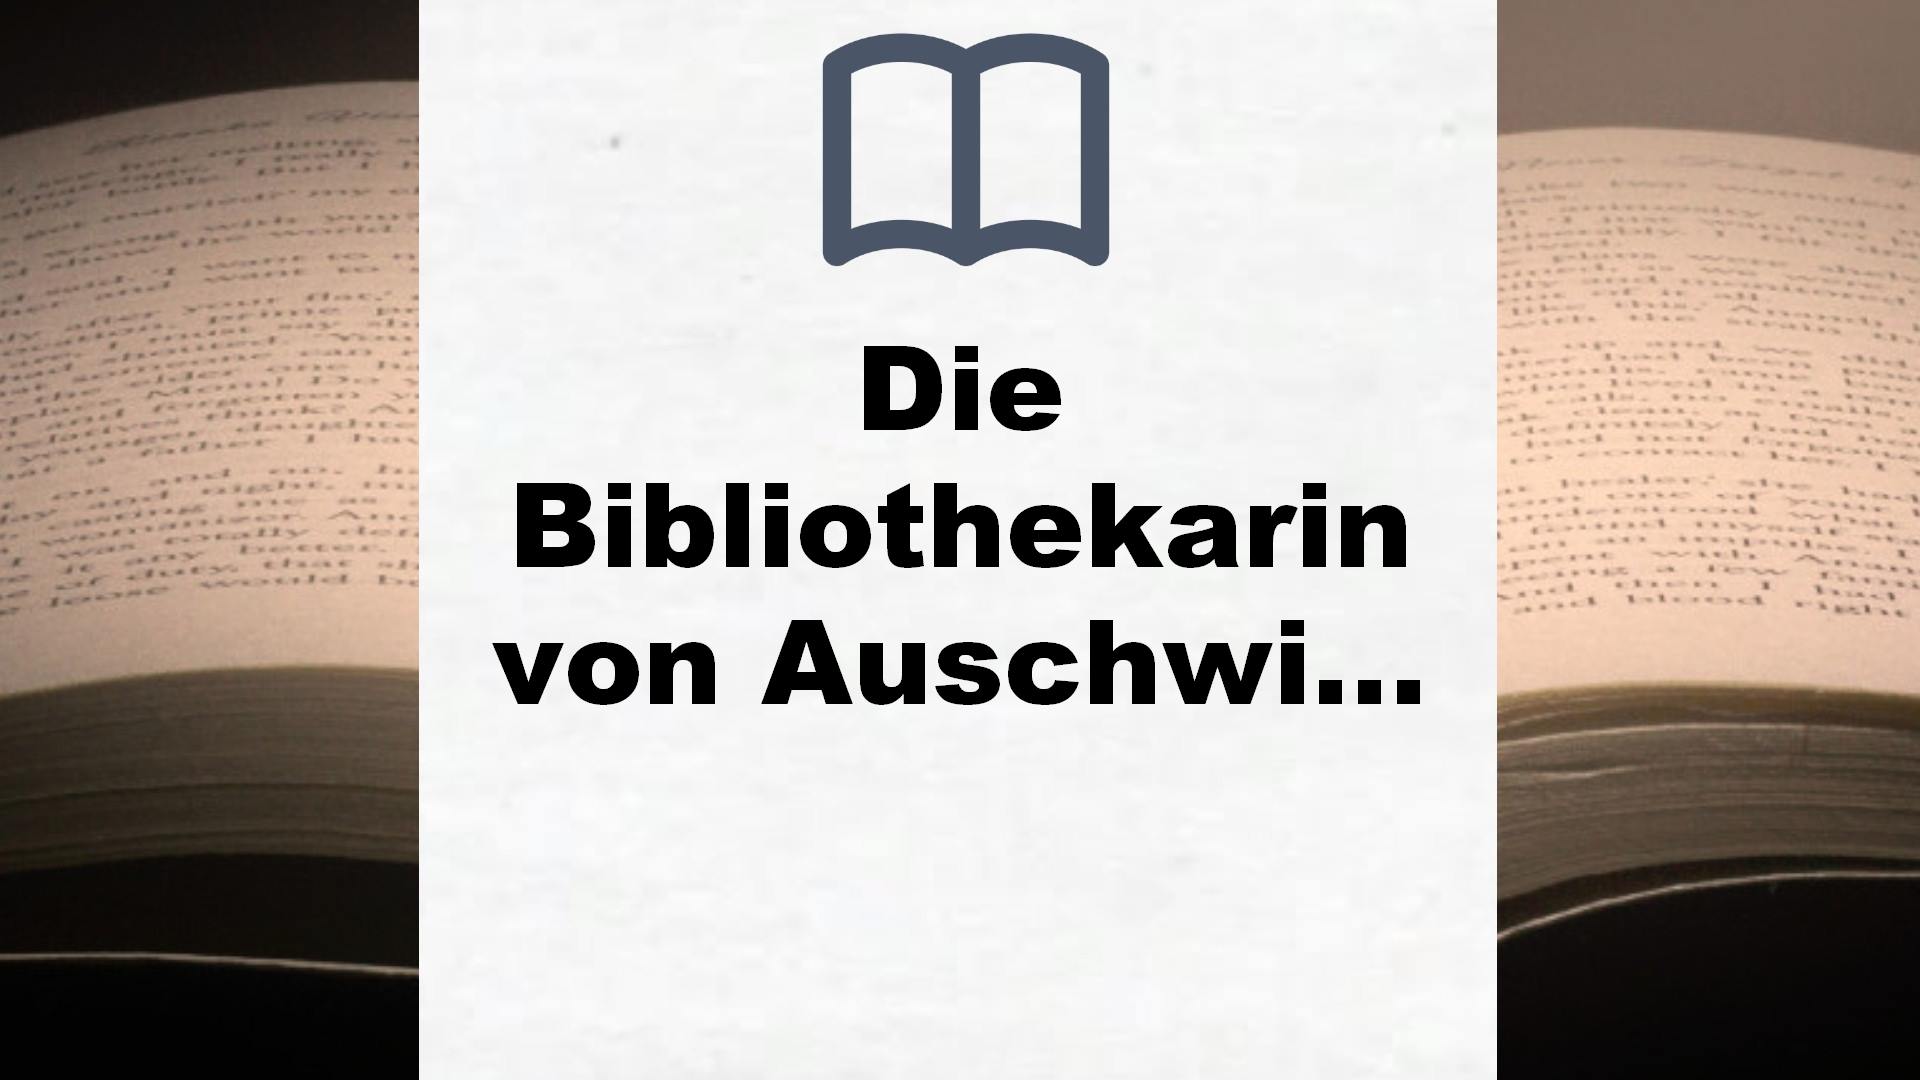 Die Bibliothekarin von Auschwitz: Roman nach einer wahren Geschichte – Buchrezension